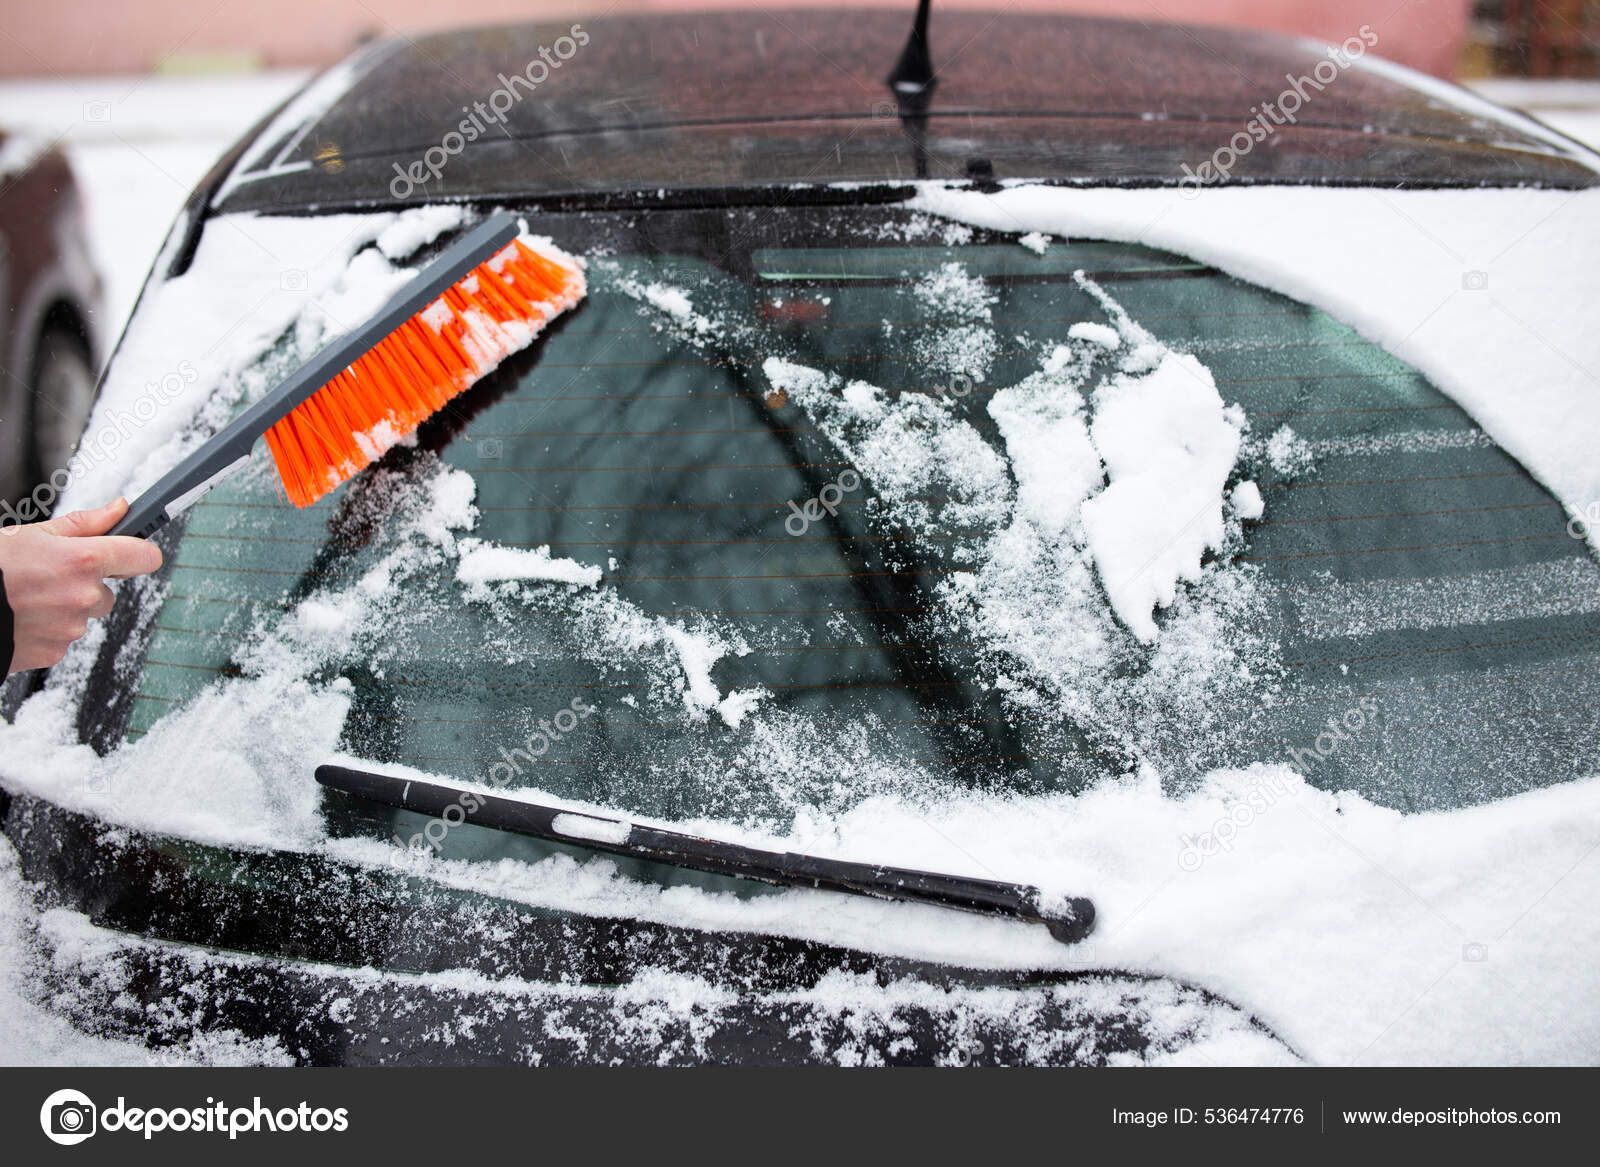 Winterprobleme mit dem Auto. Ein Mann reinigt das Auto mit einer Bürste vom  Schnee - Stockfotografie: lizenzfreie Fotos © liuntova_katsiaryna 536474776